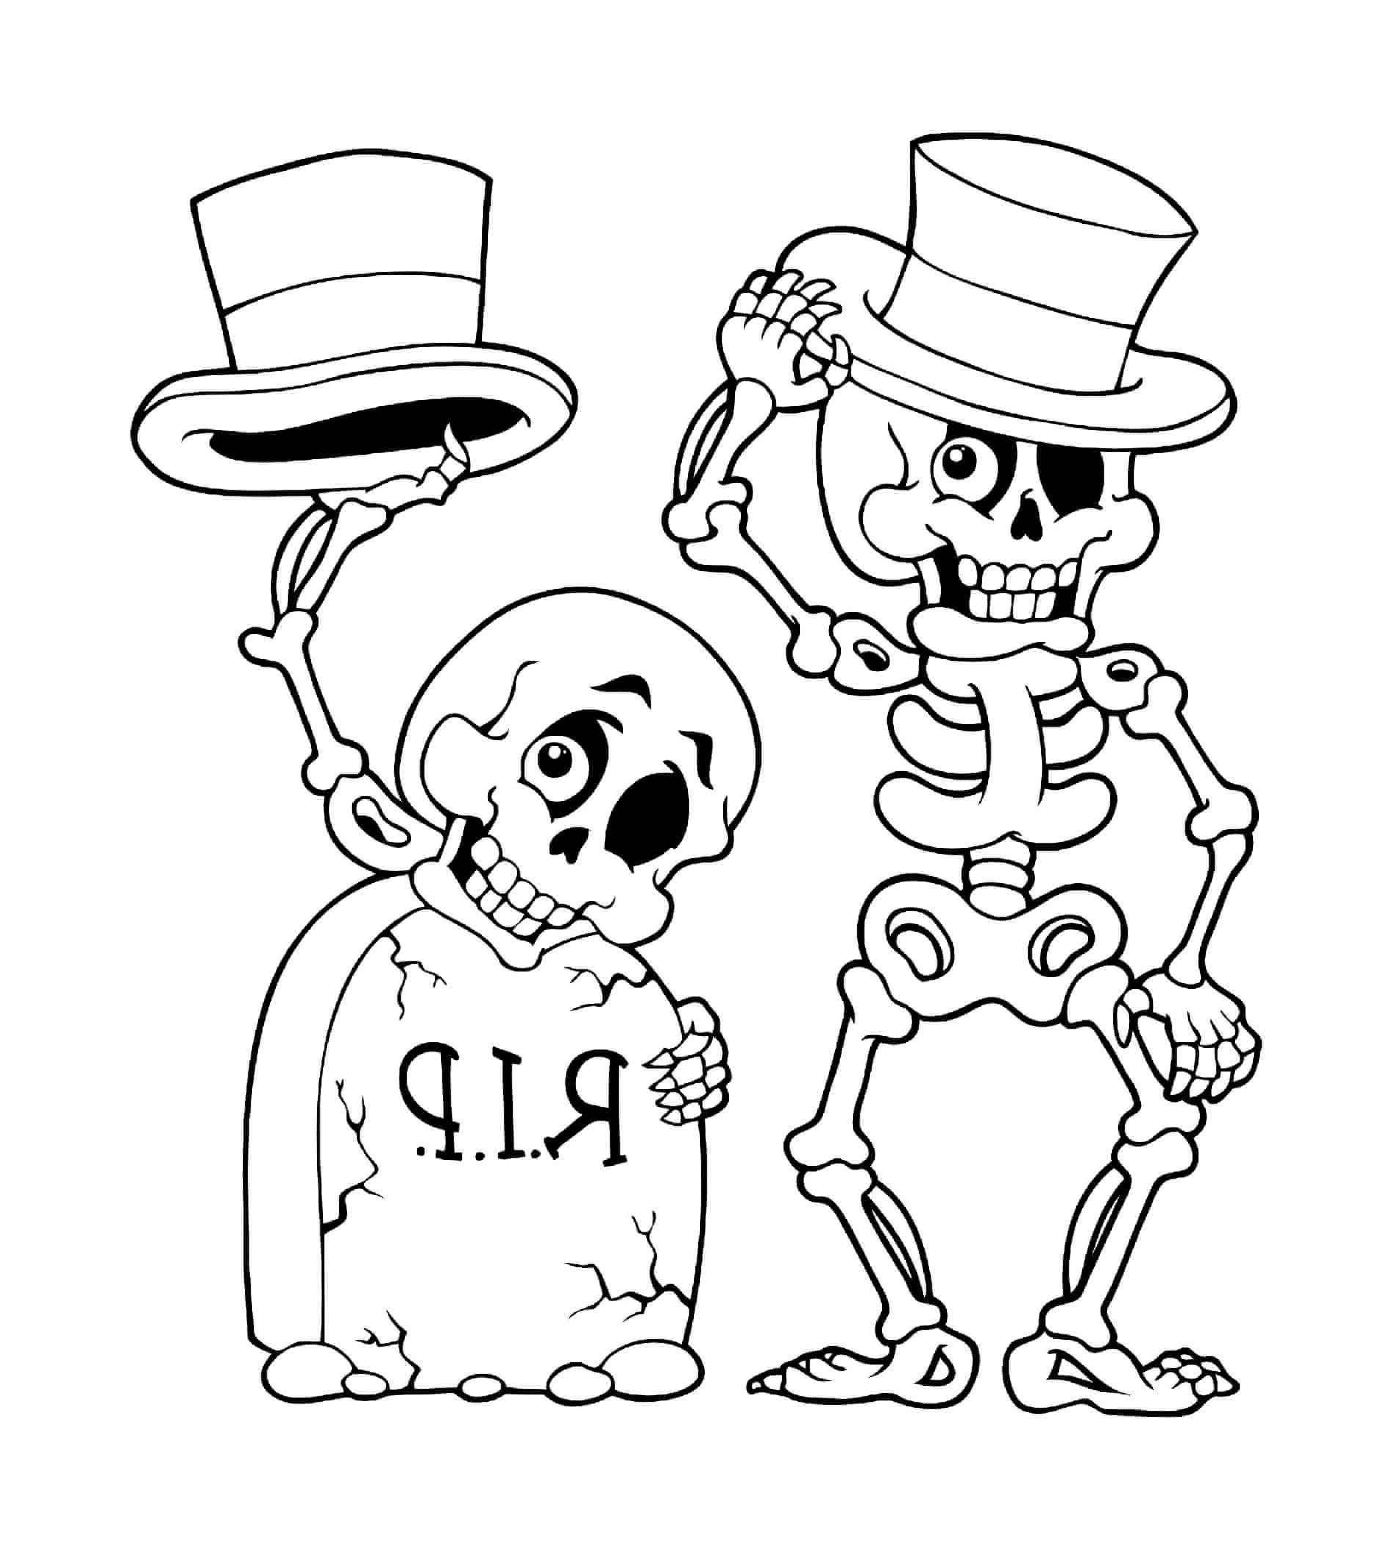  Halloween, scheletro e capo della morte 